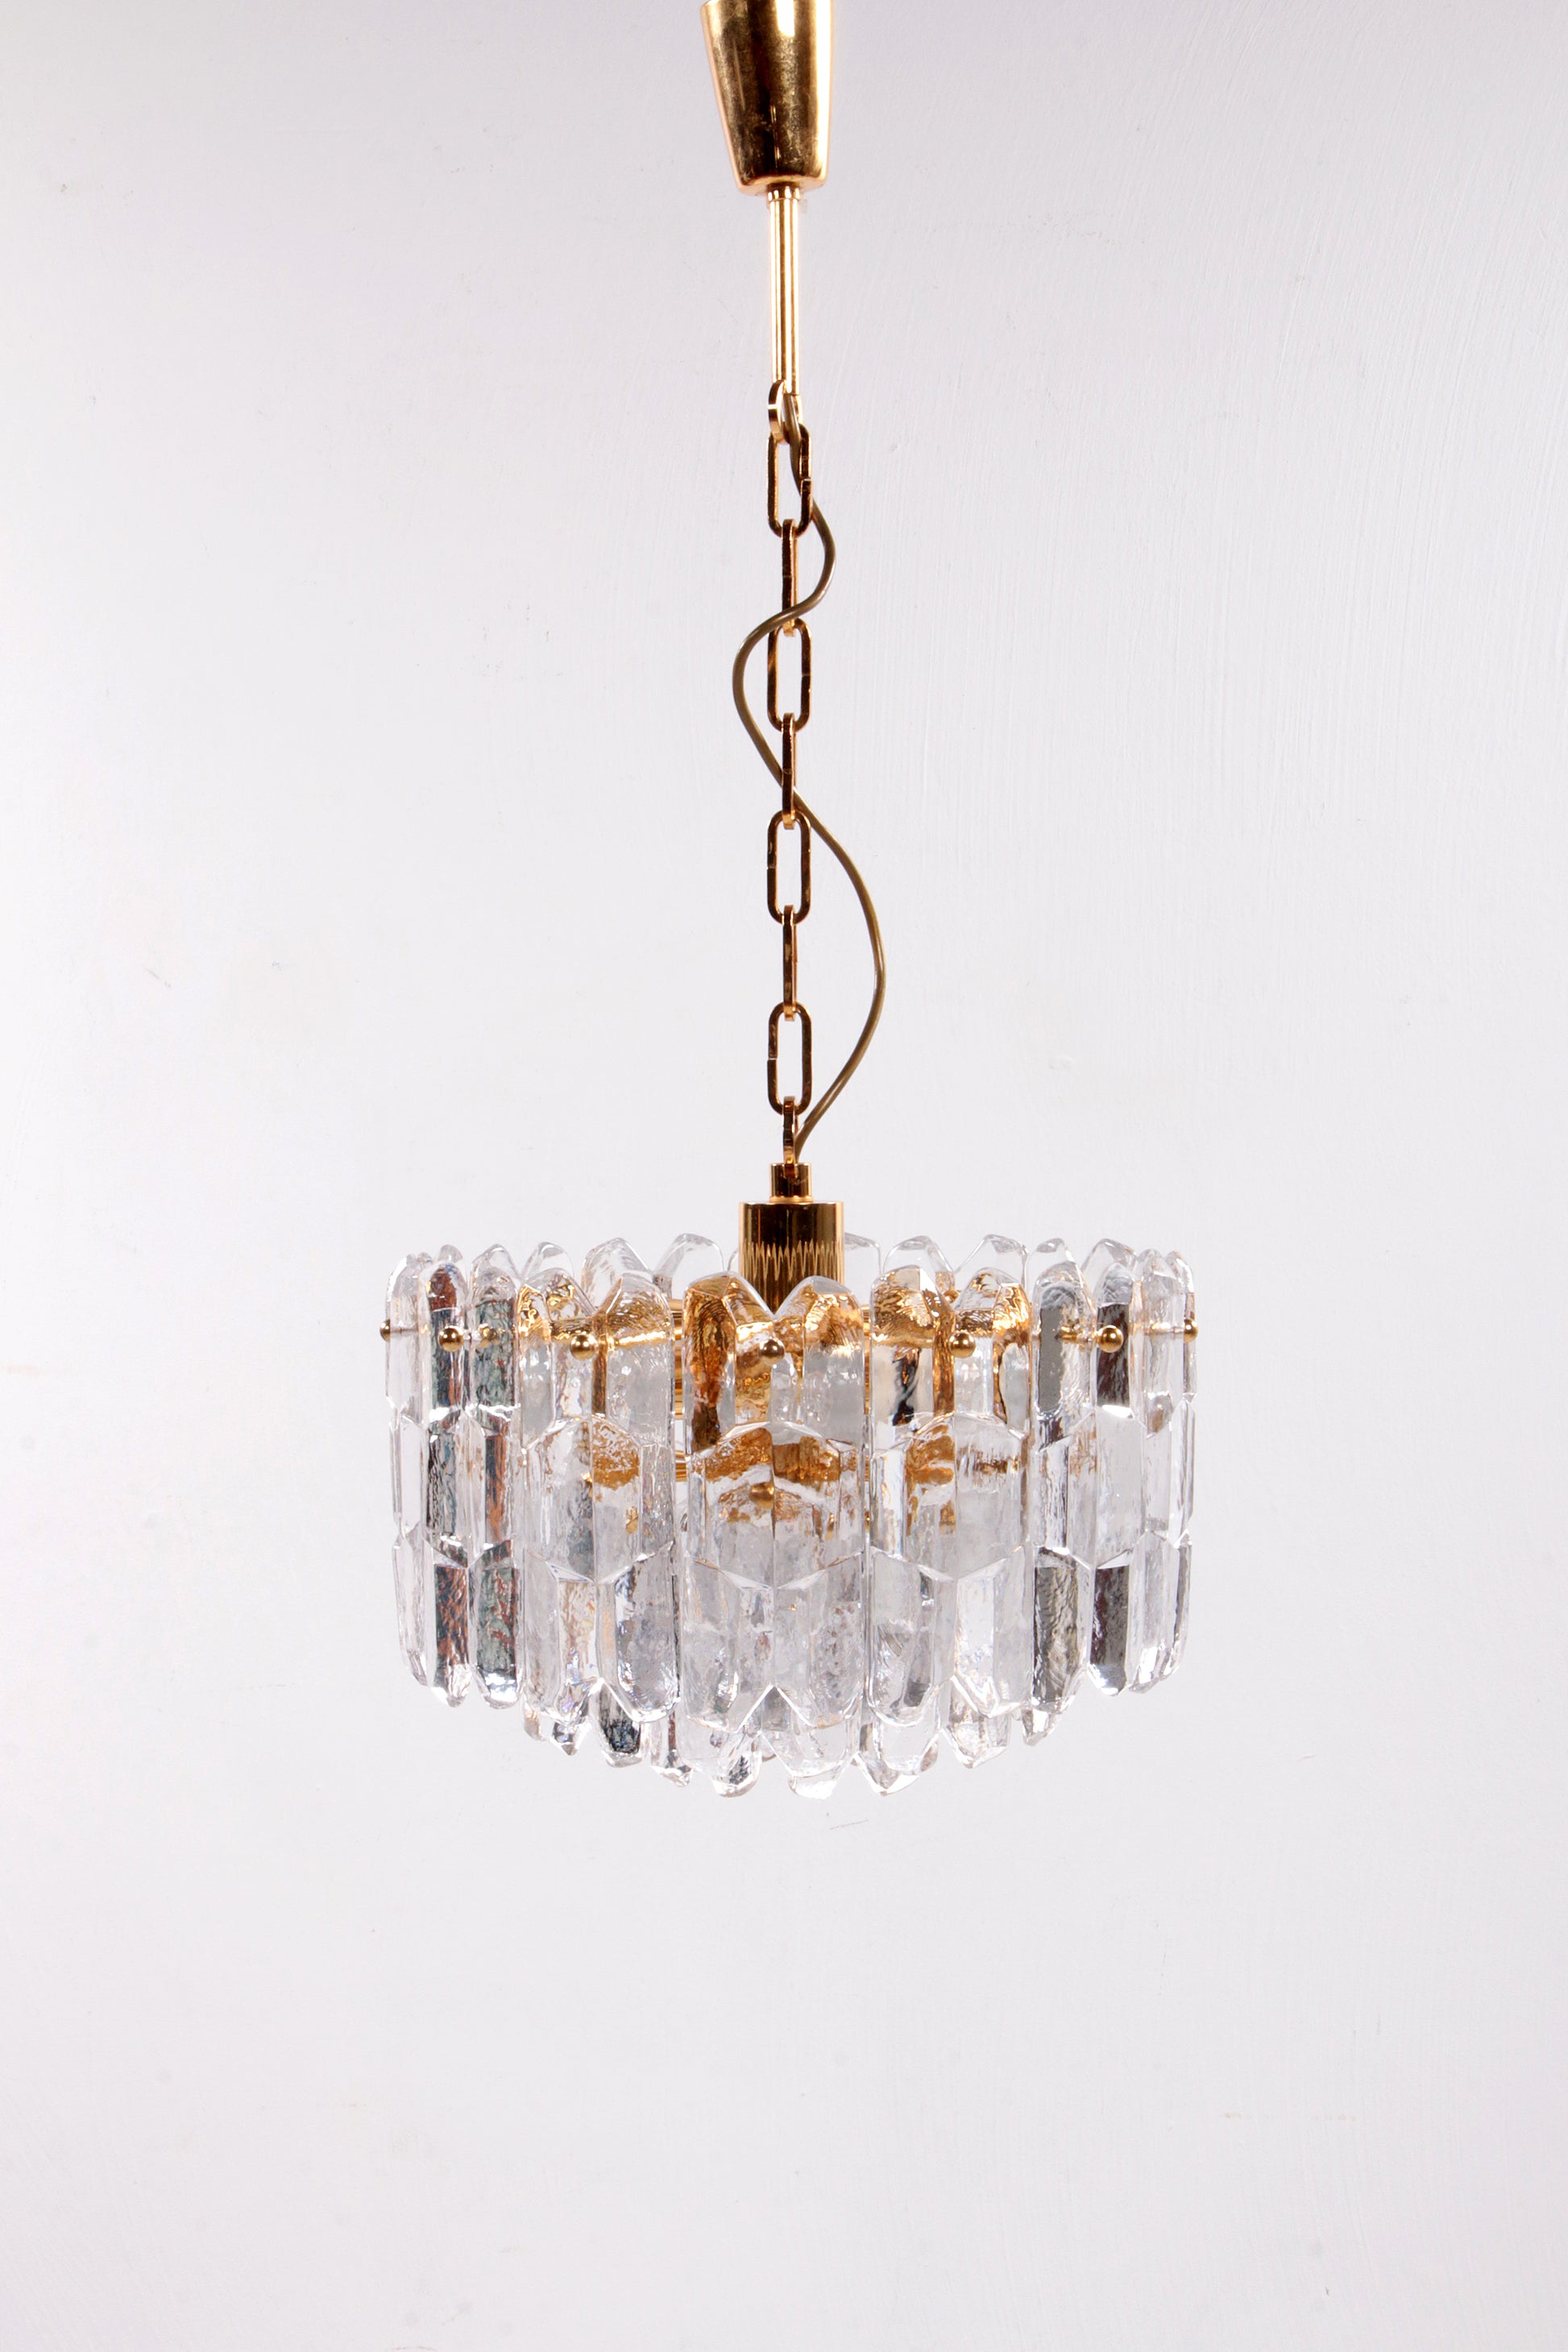 Regency stijl Hanglamp gemaakt van Muranoglas door Kalmar,1960 oostenrijk